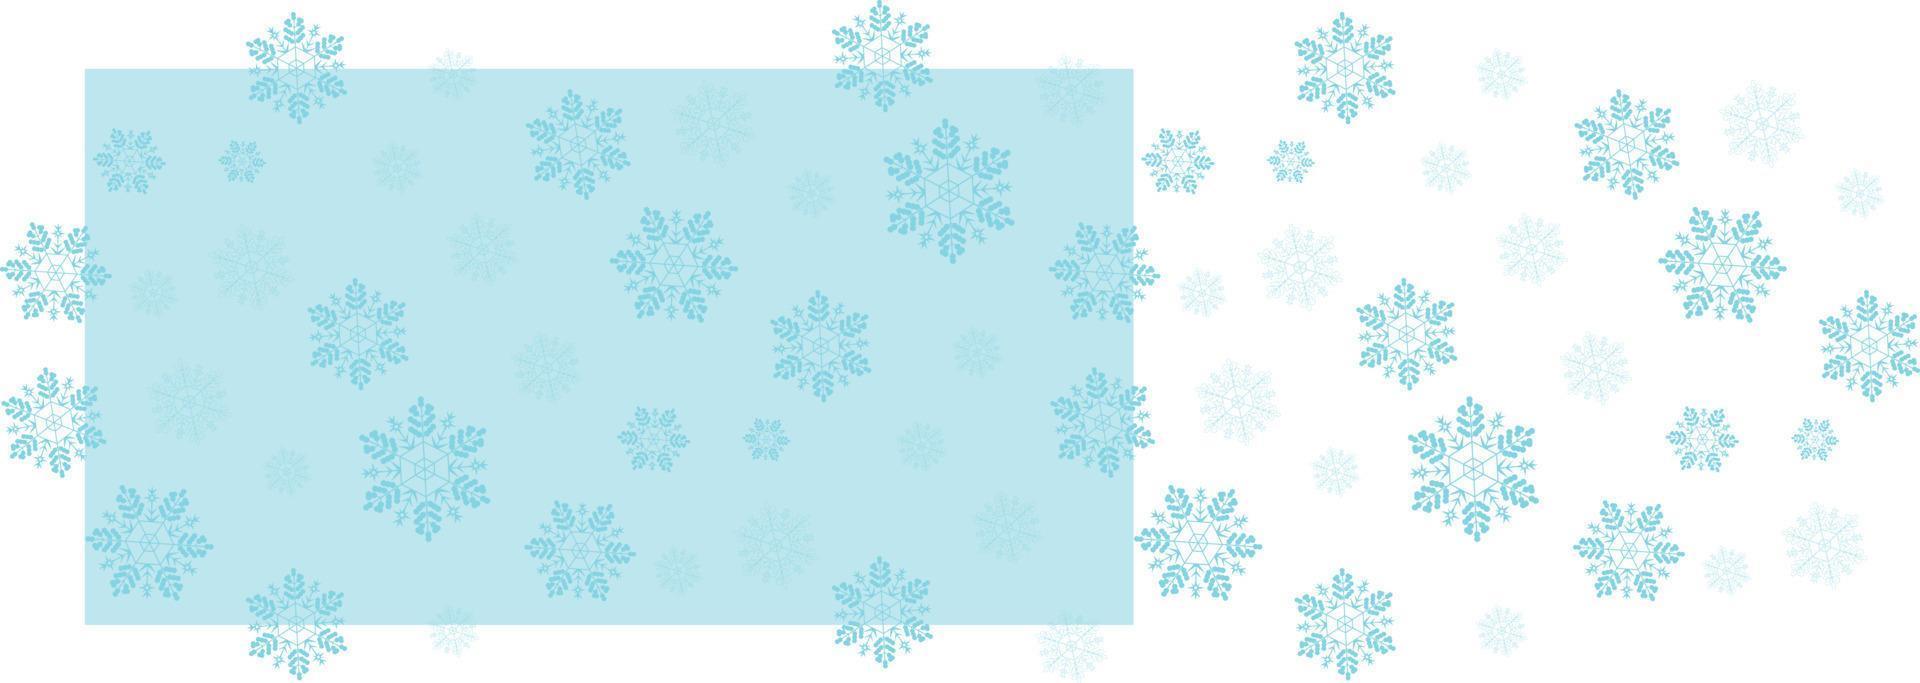 Schneeflocken nahtlose Vektormuster frostig blaue Farben Hintergrund vektor